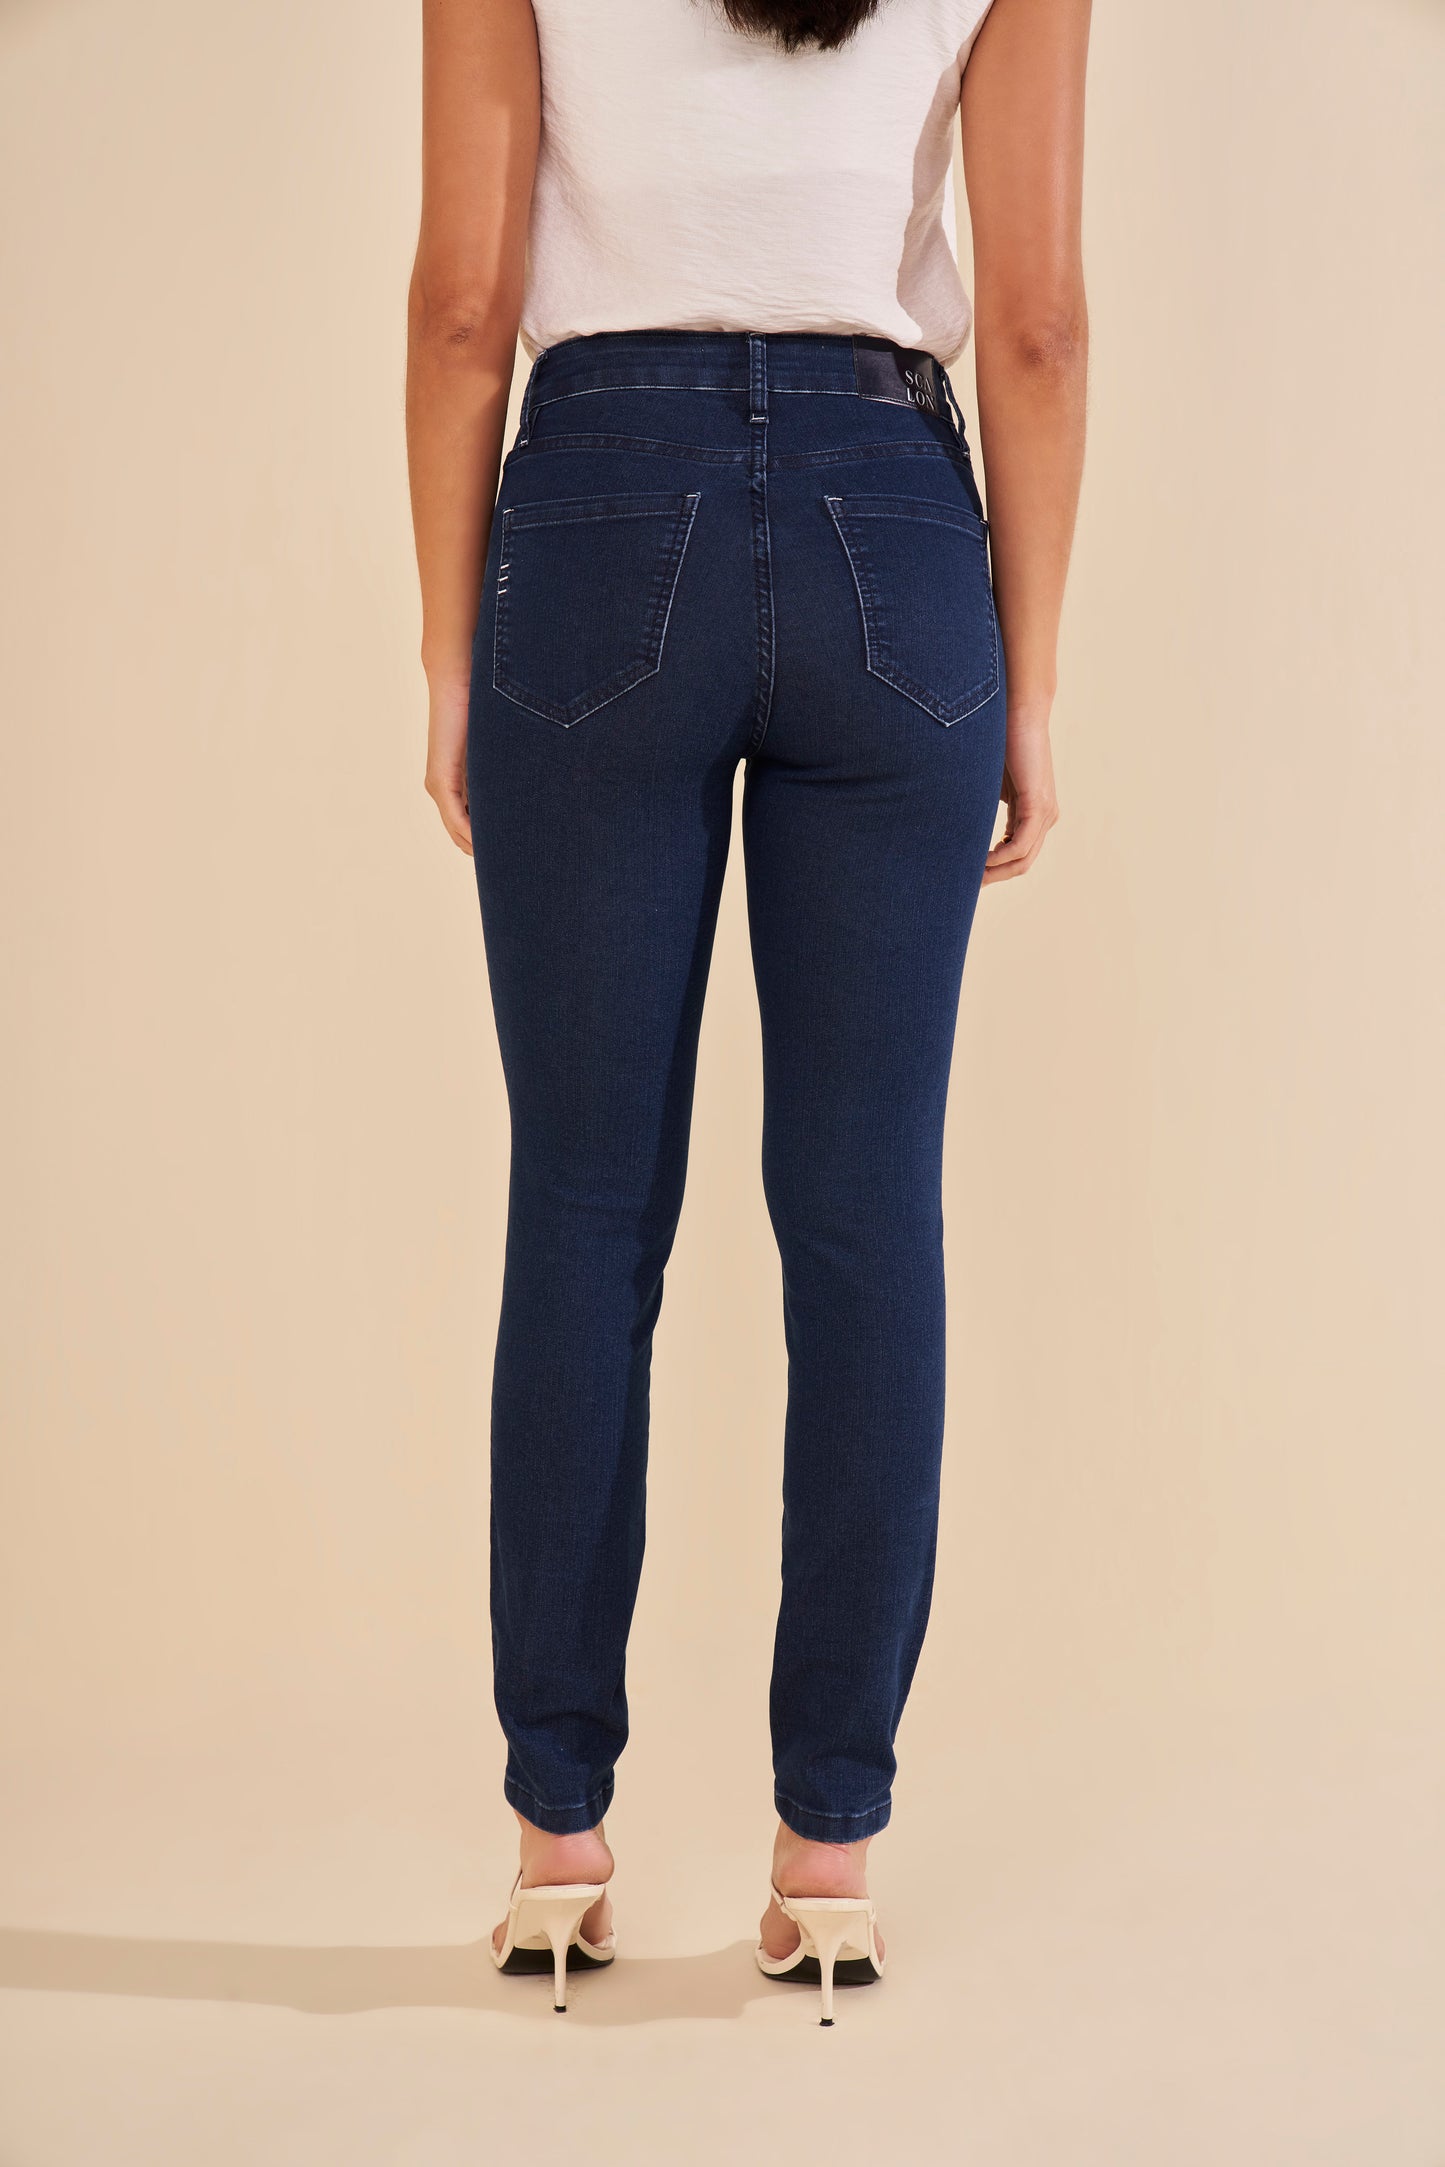 calça jeans skinny cintura intermediária detalhe travetes